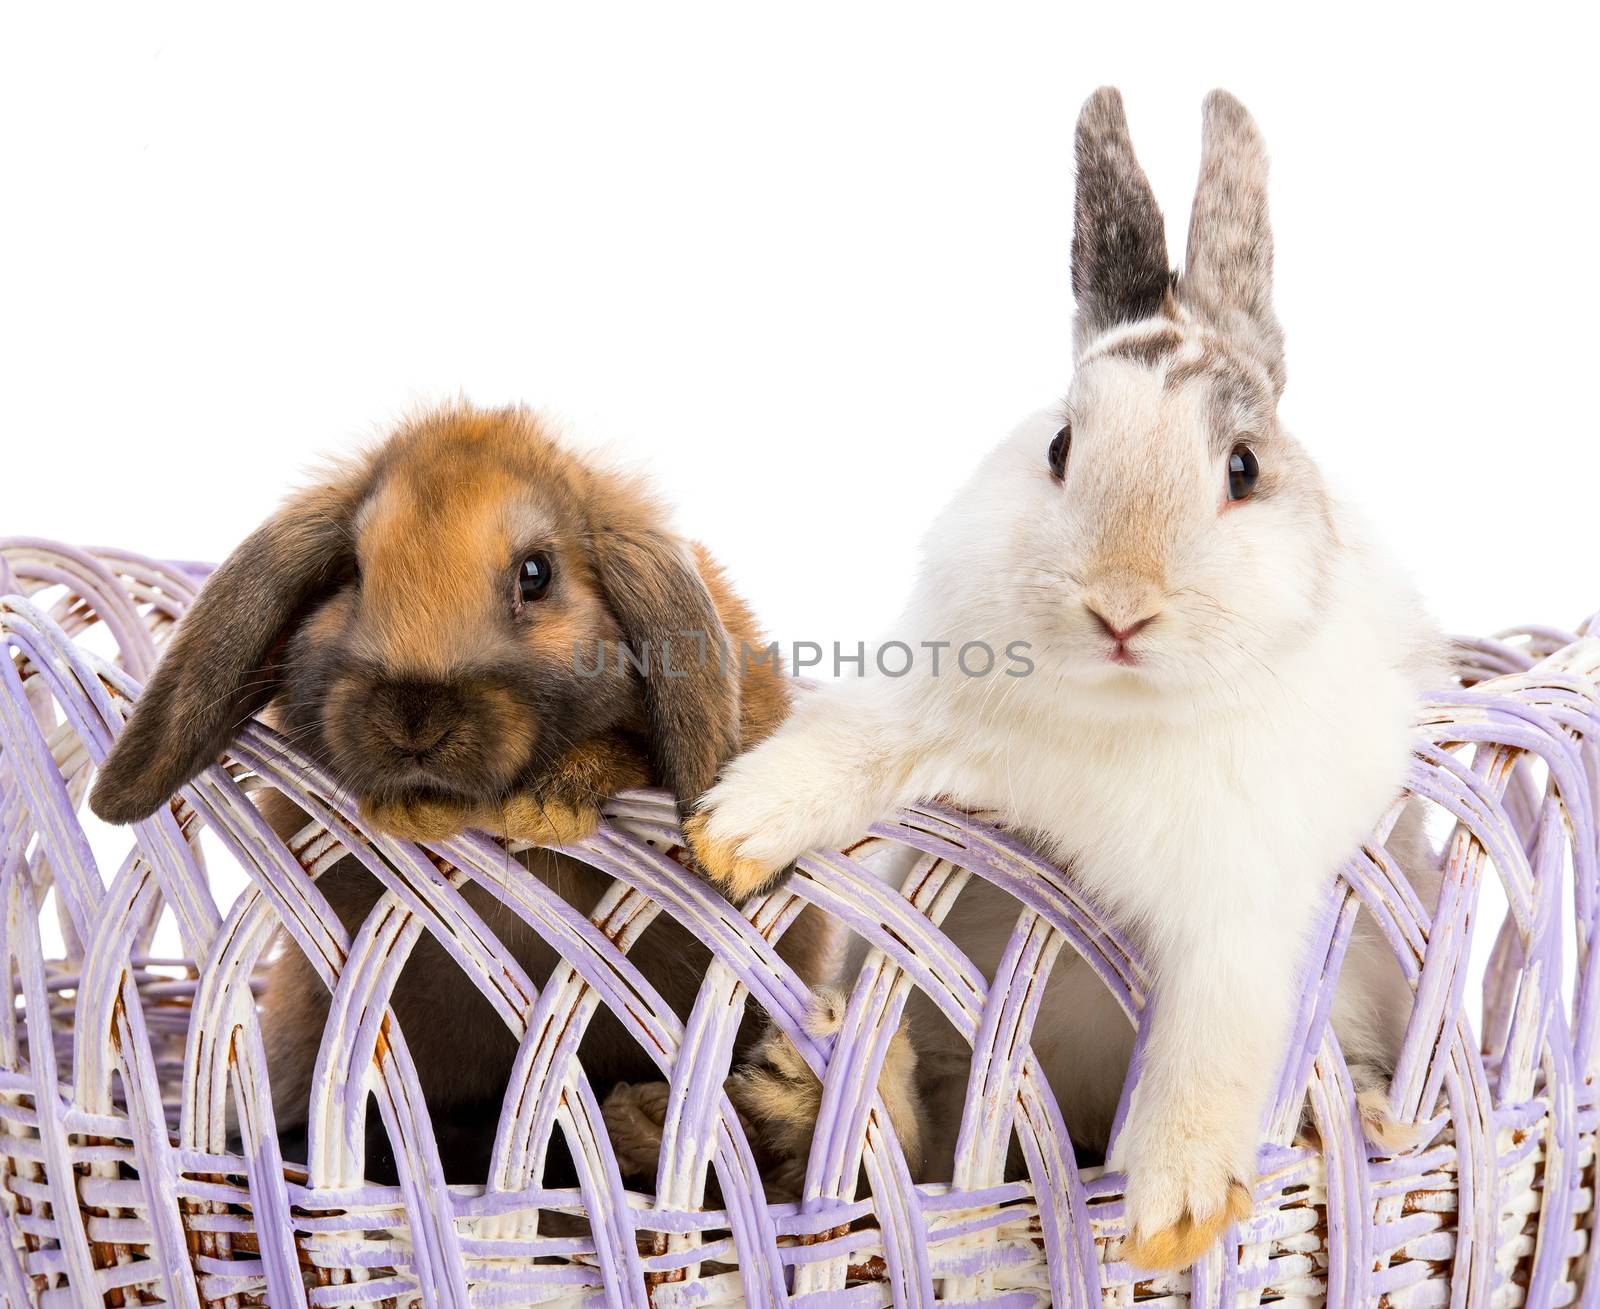 Easter bunnies by GekaSkr